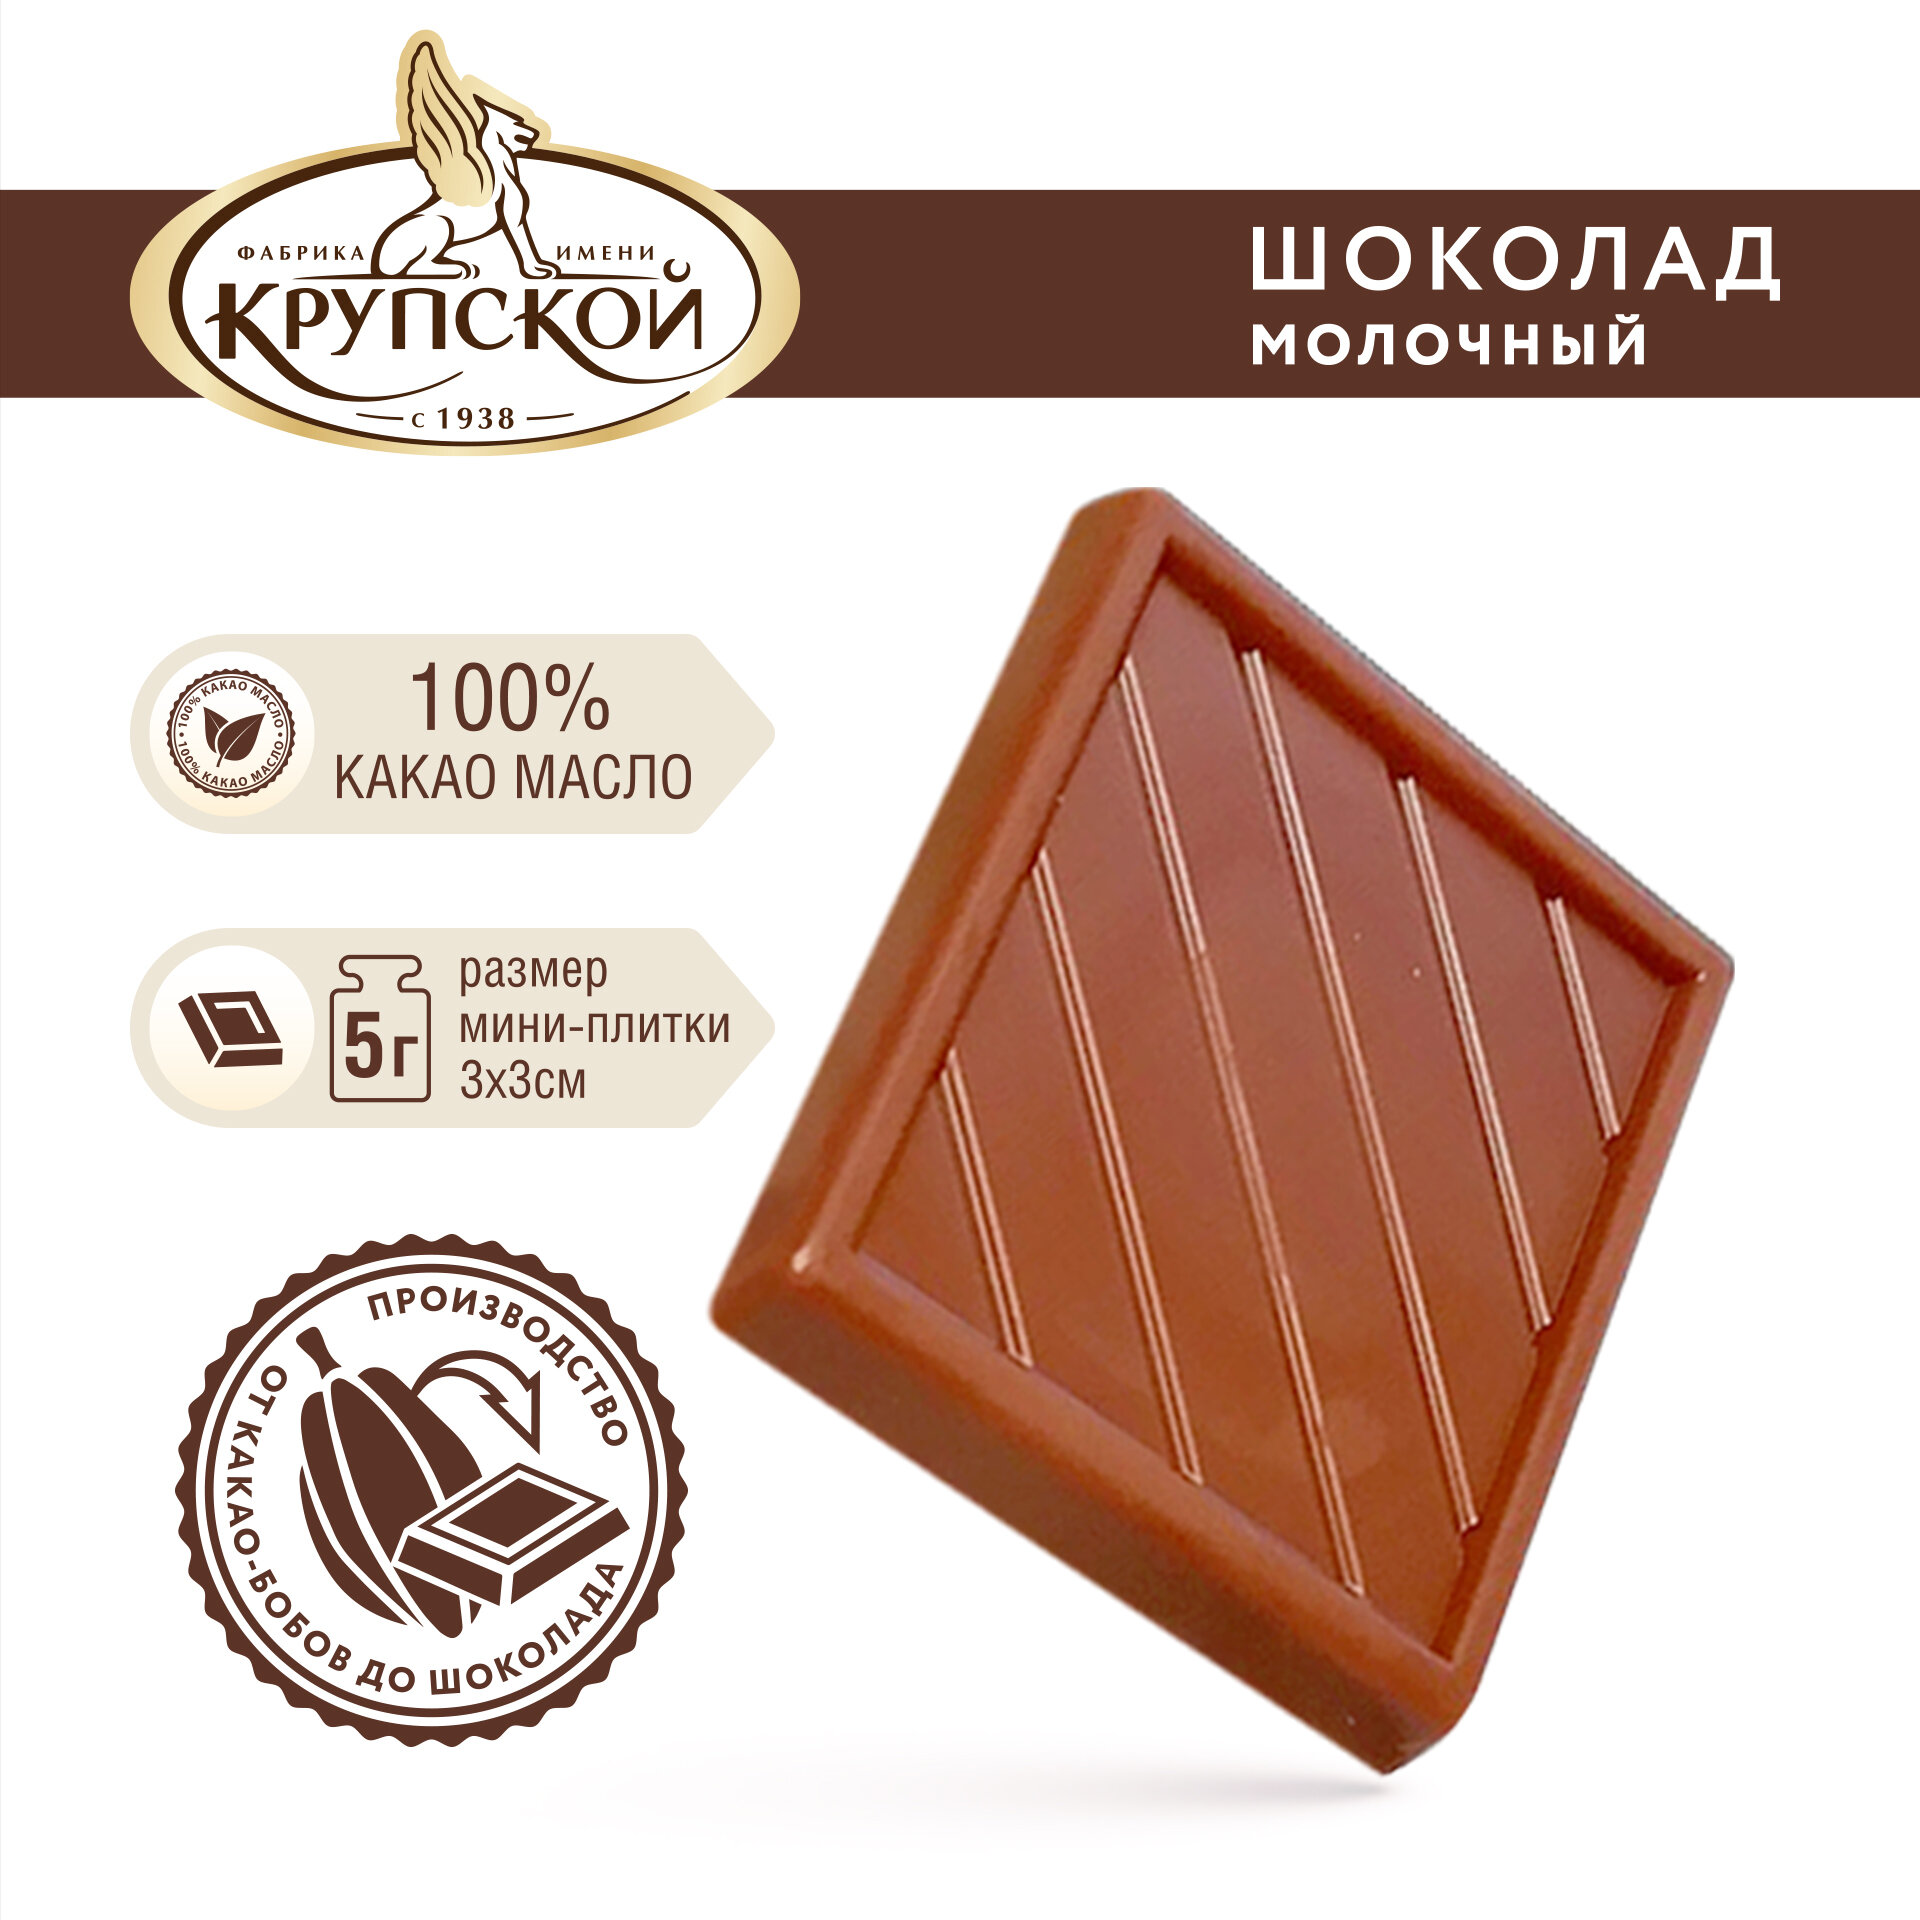 Шоколад кондитерский для глазури молочный Академия шоколада № 261, 37% какао ТМ Фабрика им. Крупской 1 кг - фотография № 2